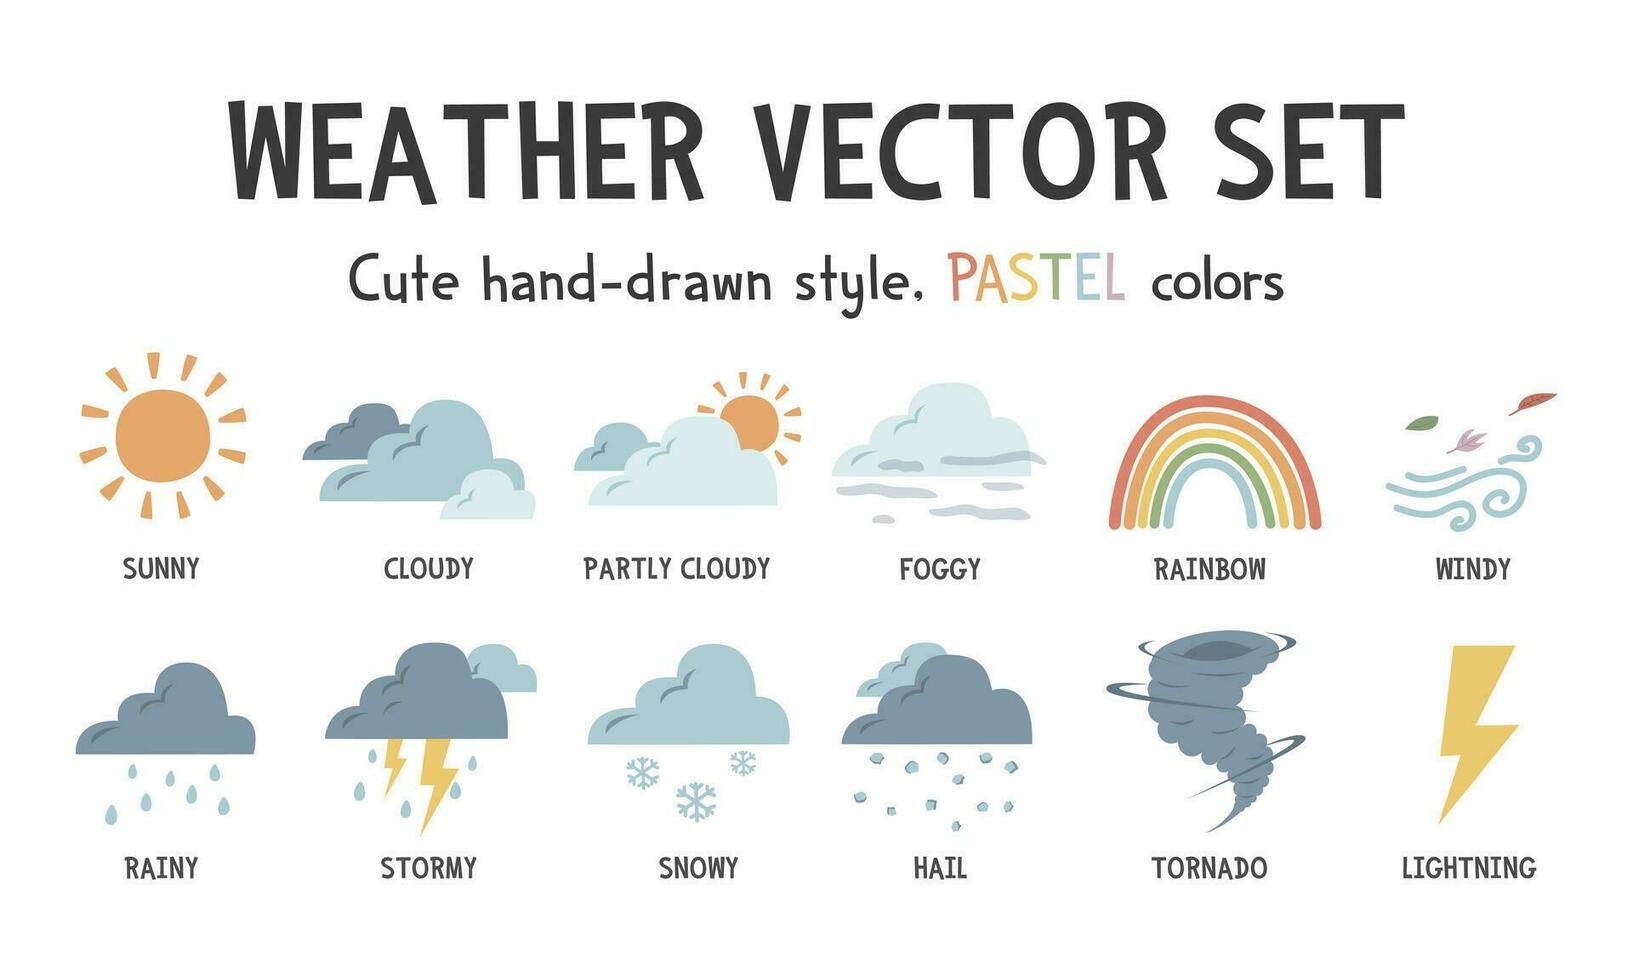 Wetter Vektor Satz. süß Wetter Vektor Illustration mit Namen. bunt Pastell- Wetter Veranstaltungen Clip Art Karikatur eben Stil. sonnig, wolkig, windig, Regenbogen, nebelig, stürmisch, regnerisch, schneebedeckt, Hagel